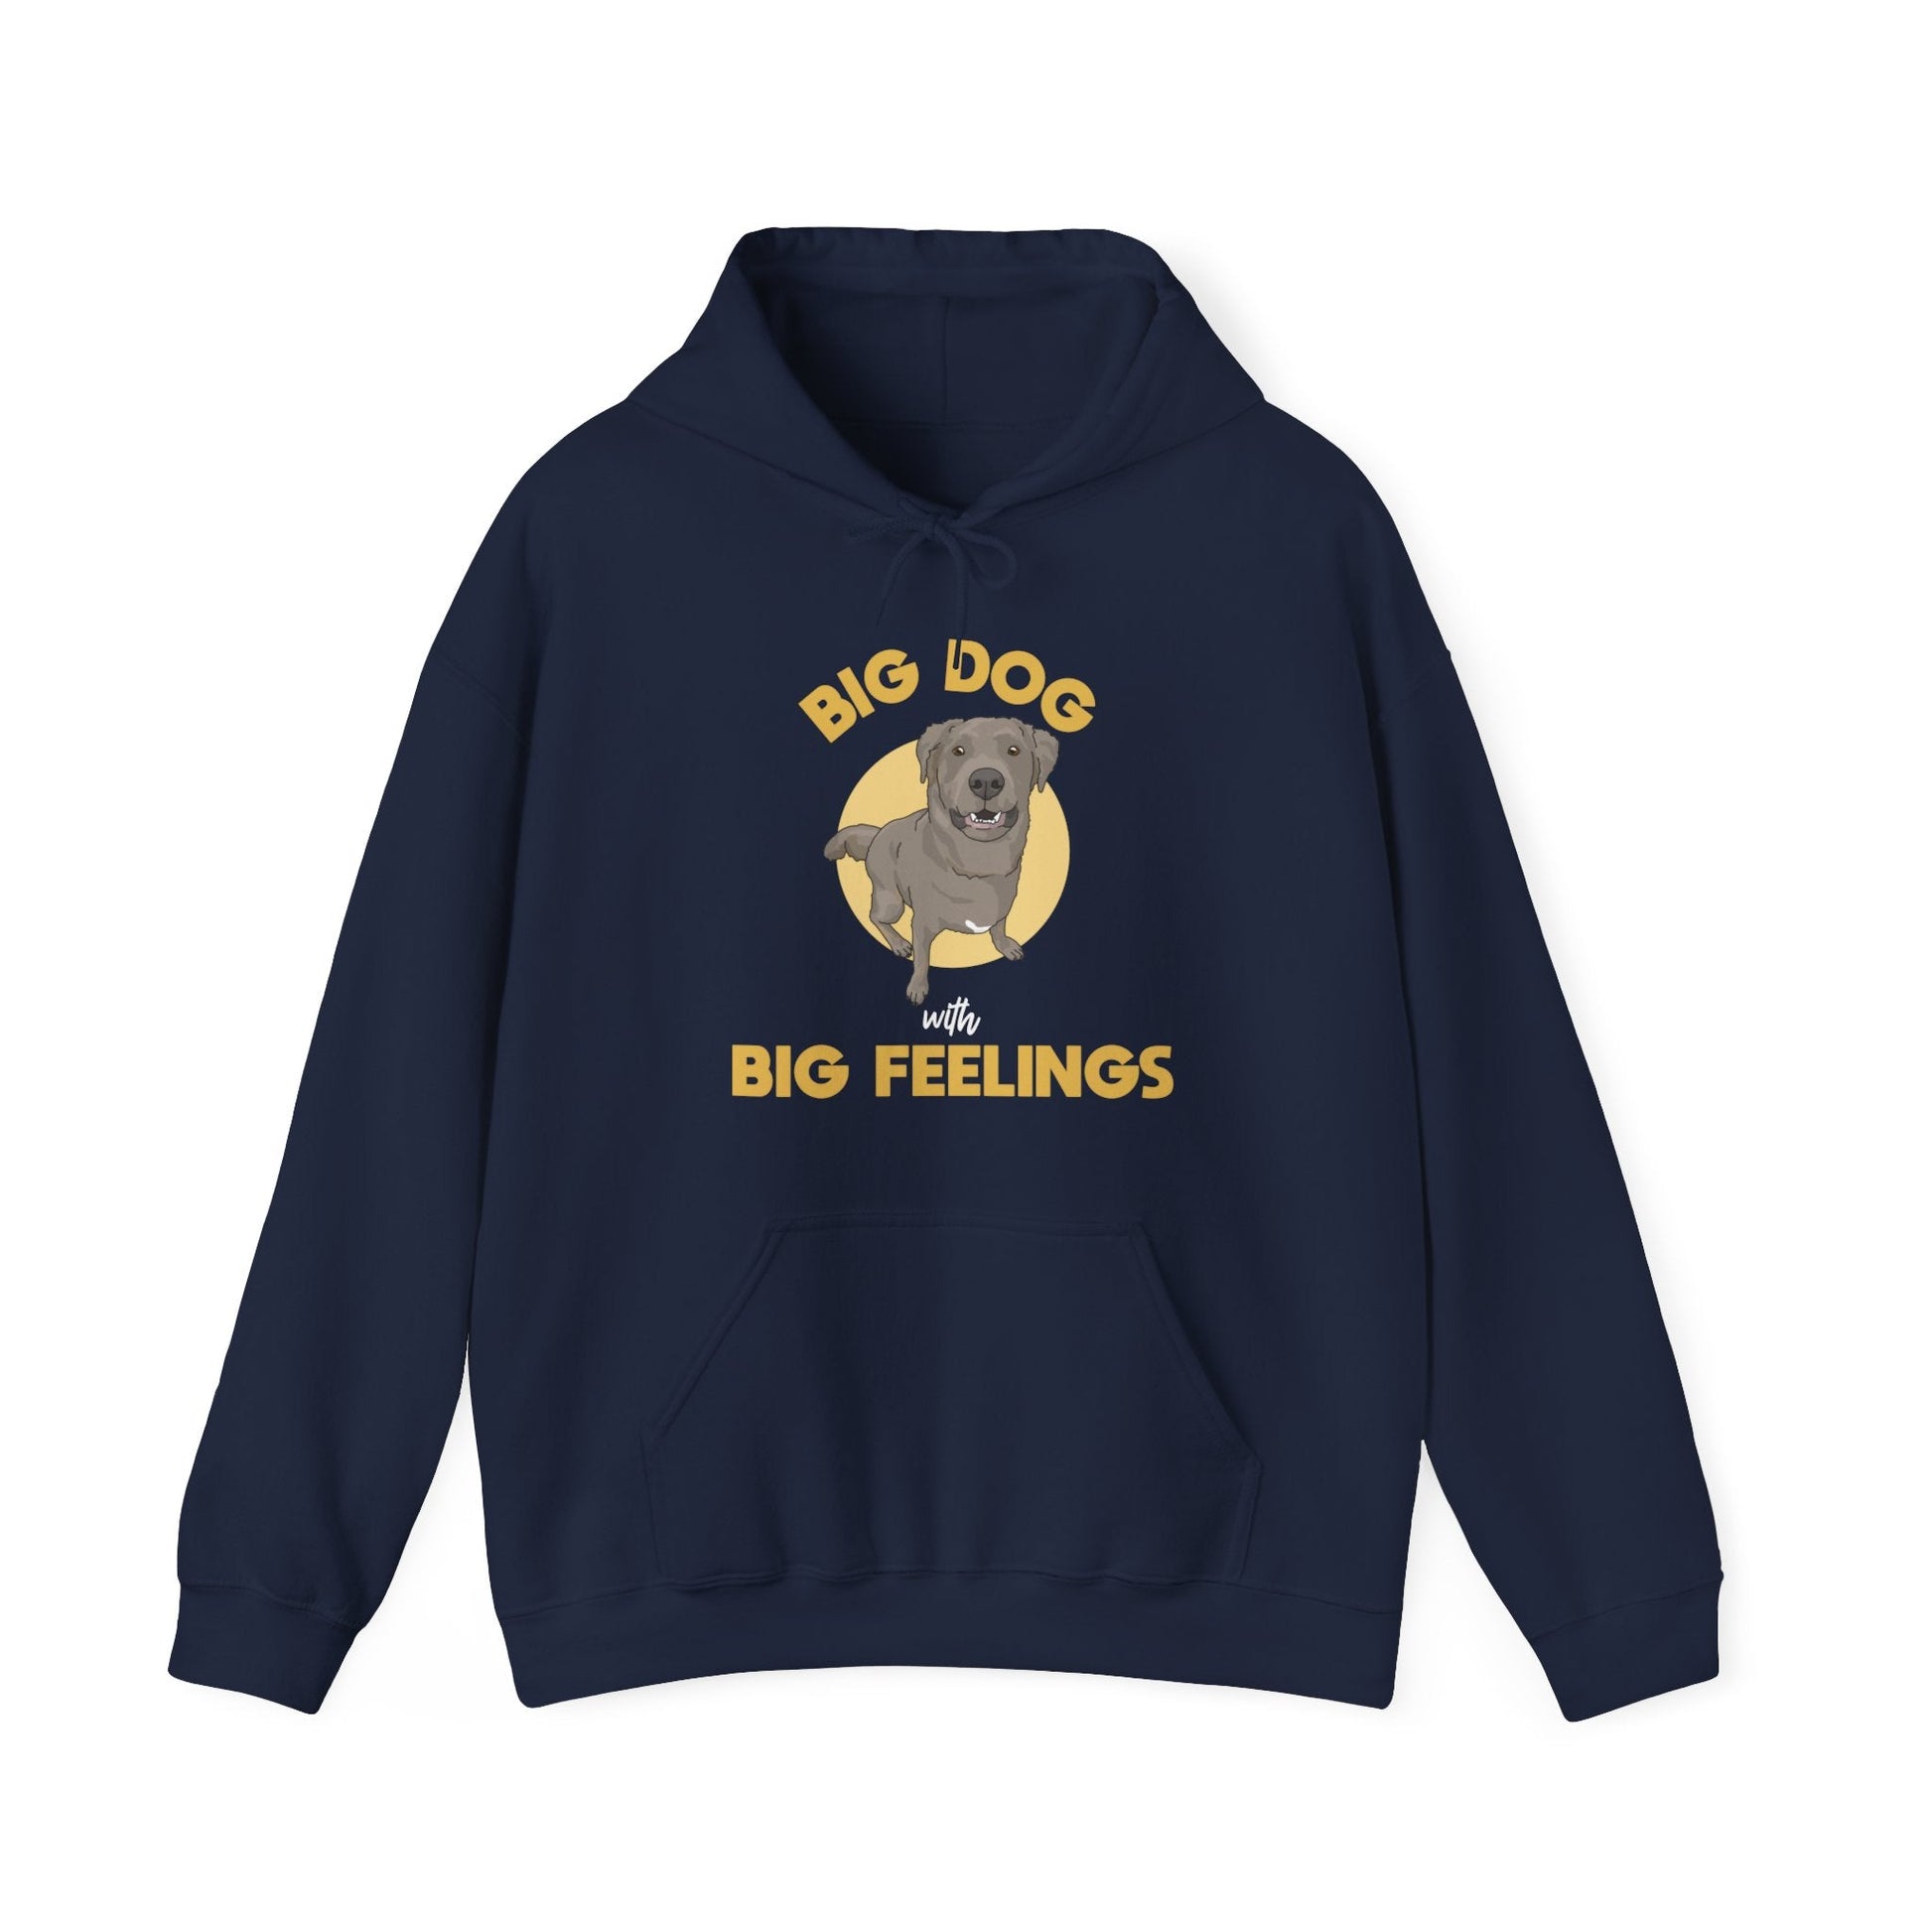 Big Dog With Big Feelings | Hooded Sweatshirt - Detezi Designs-11448679455332051965